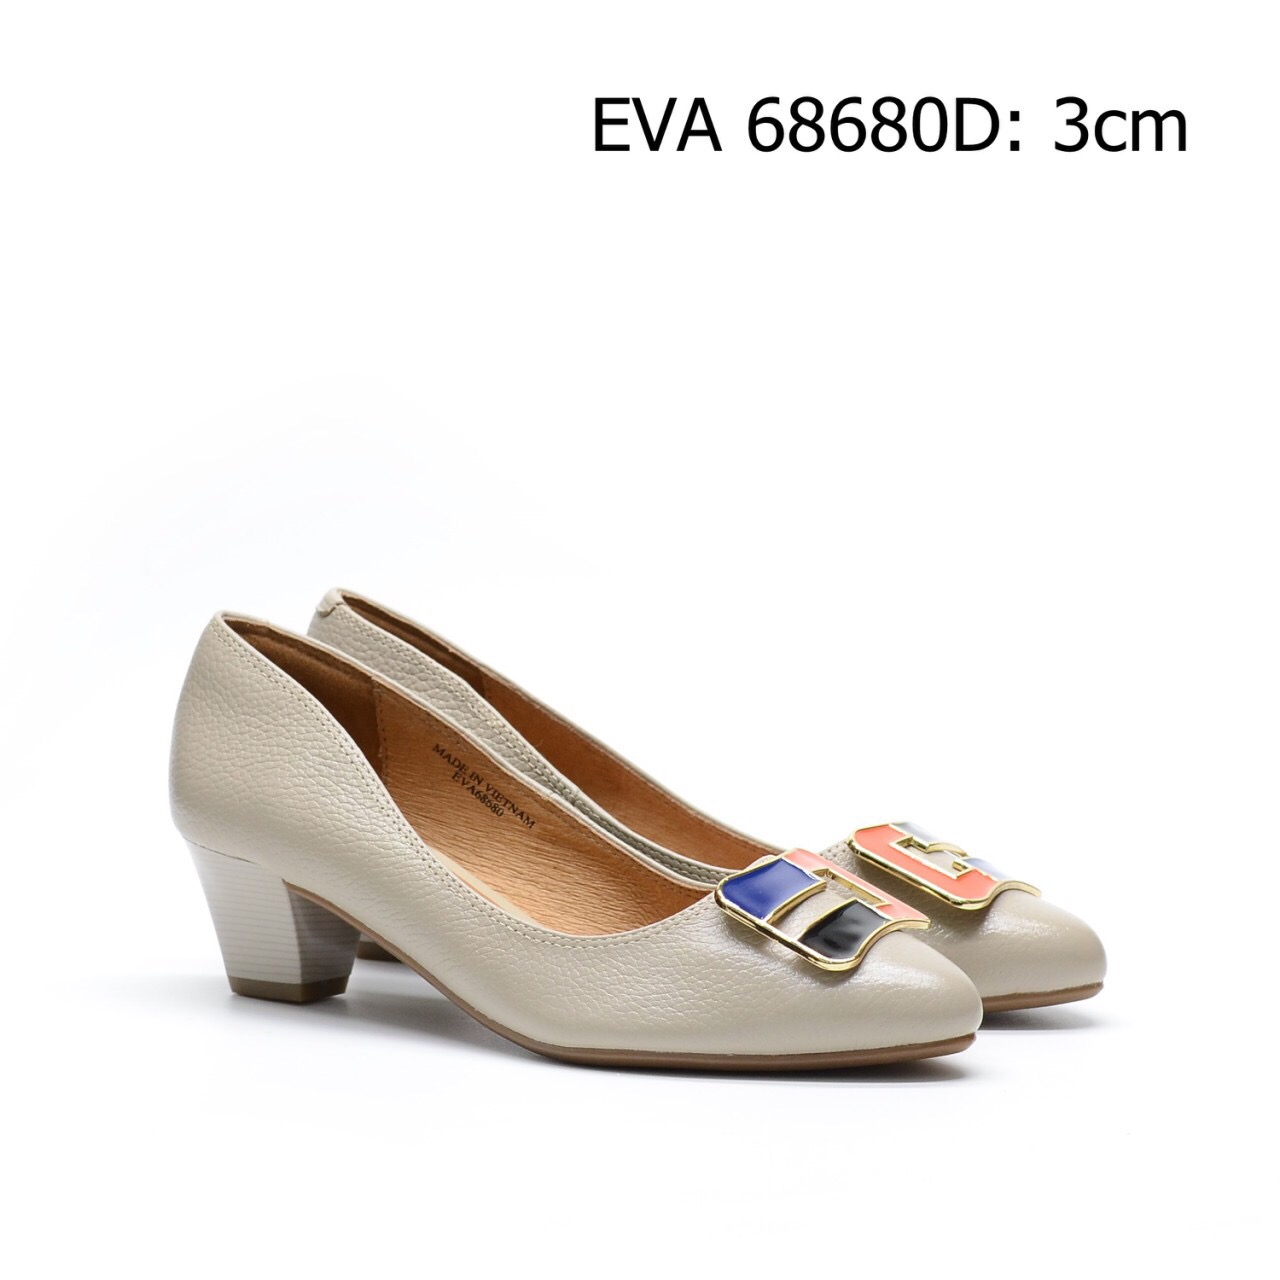 Giày công sở da bò EVA68680D phối nơ hai màu cực chất